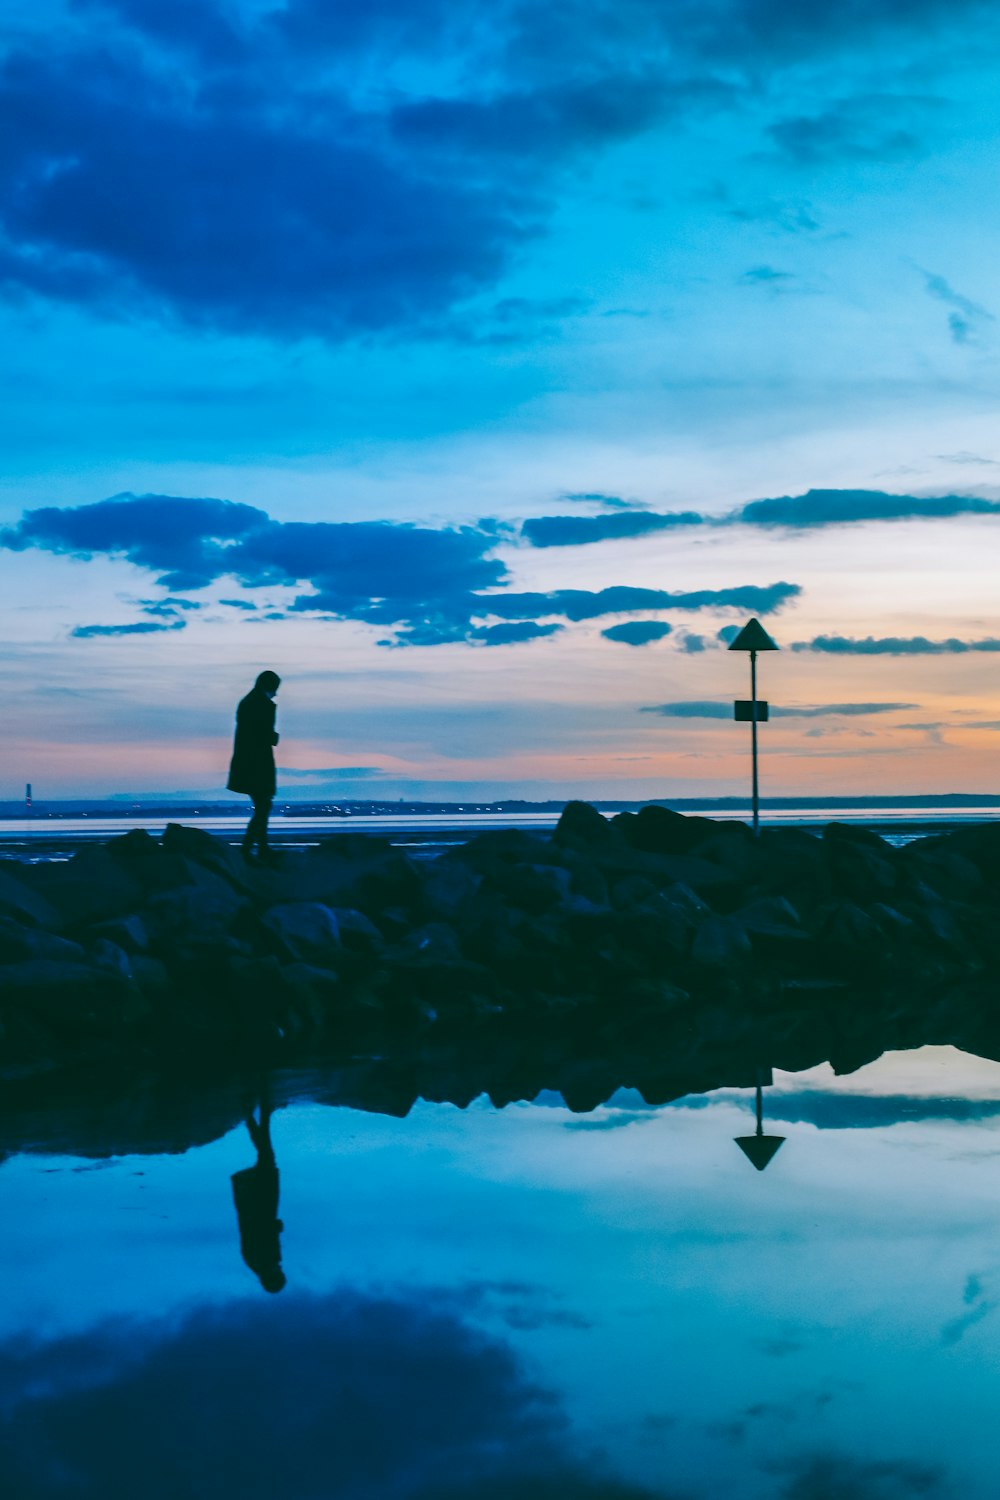 silhouette of person walking on rocks near body of water